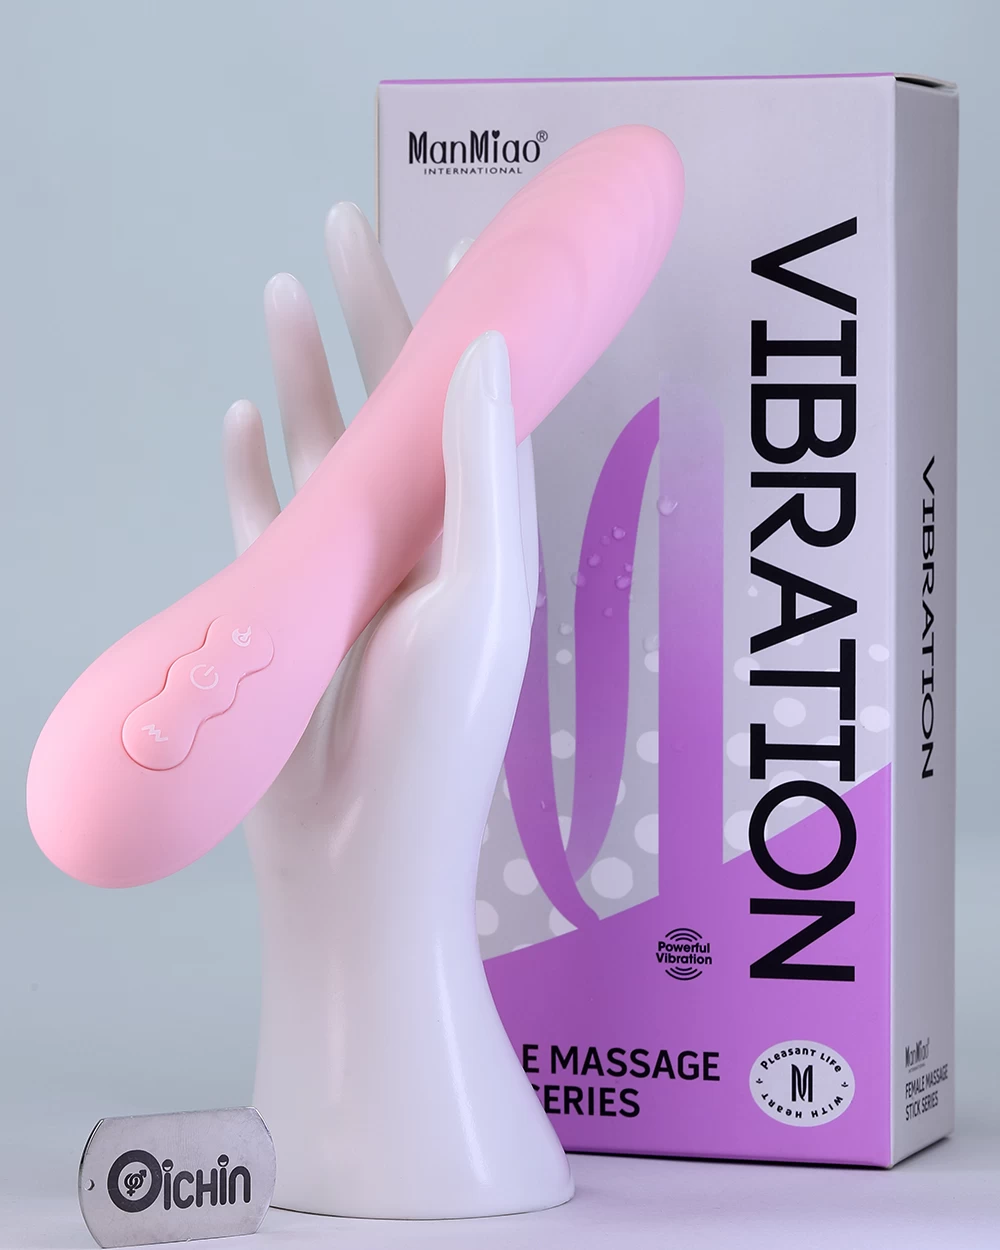 Máy Massage Tình Yêu Heated Vibrator Manmiao Là đồ Chơi Tình Dục Xinh Xắn